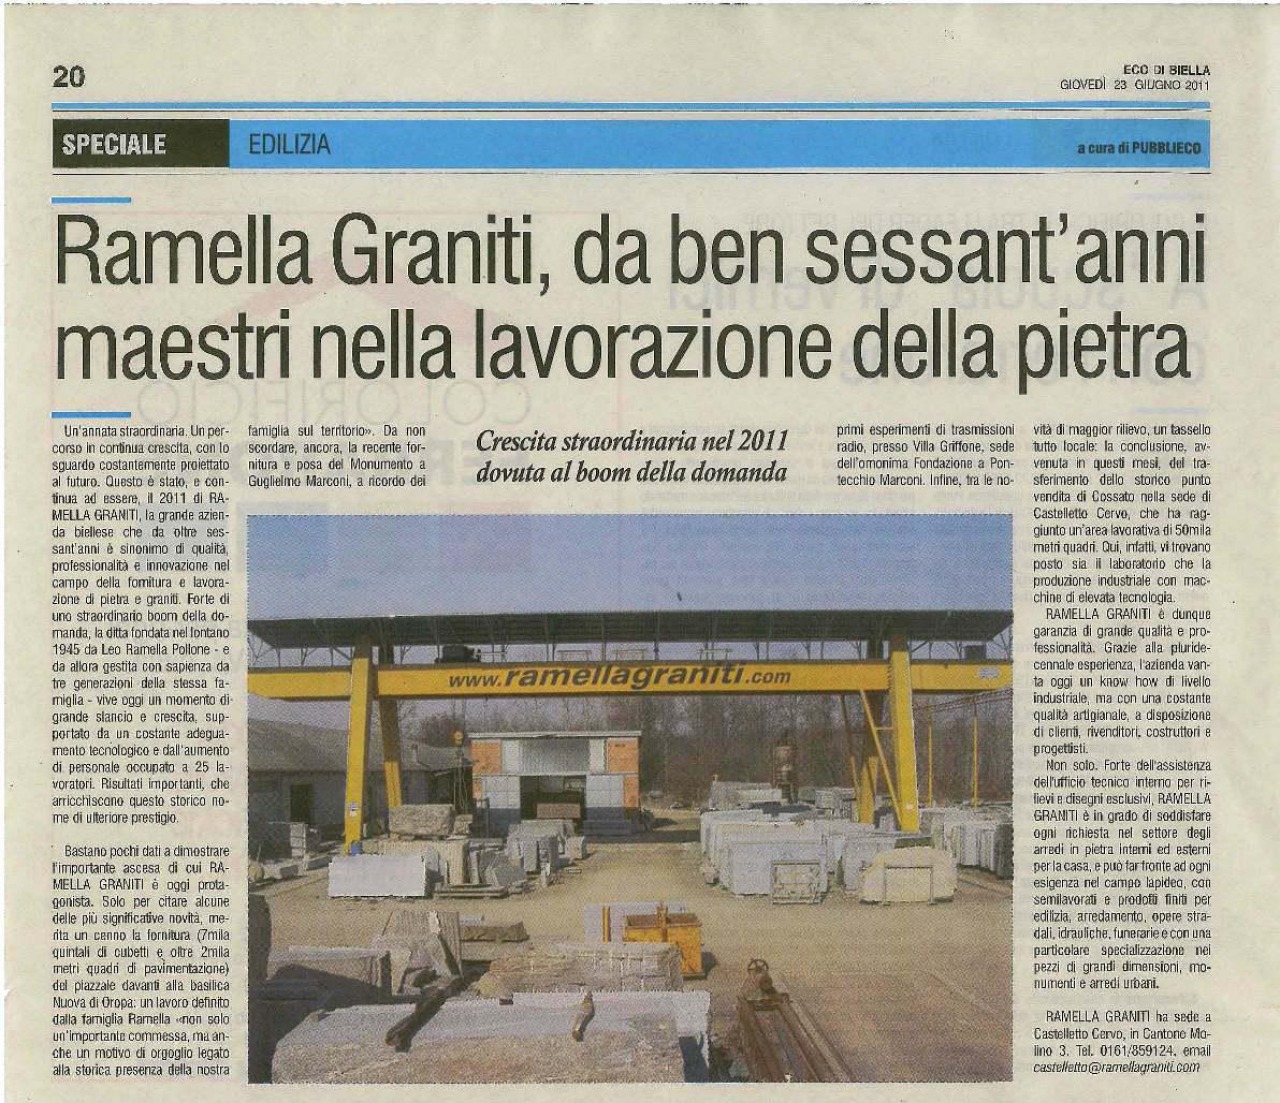 Ramella Graniti extraordinary growth in 2011